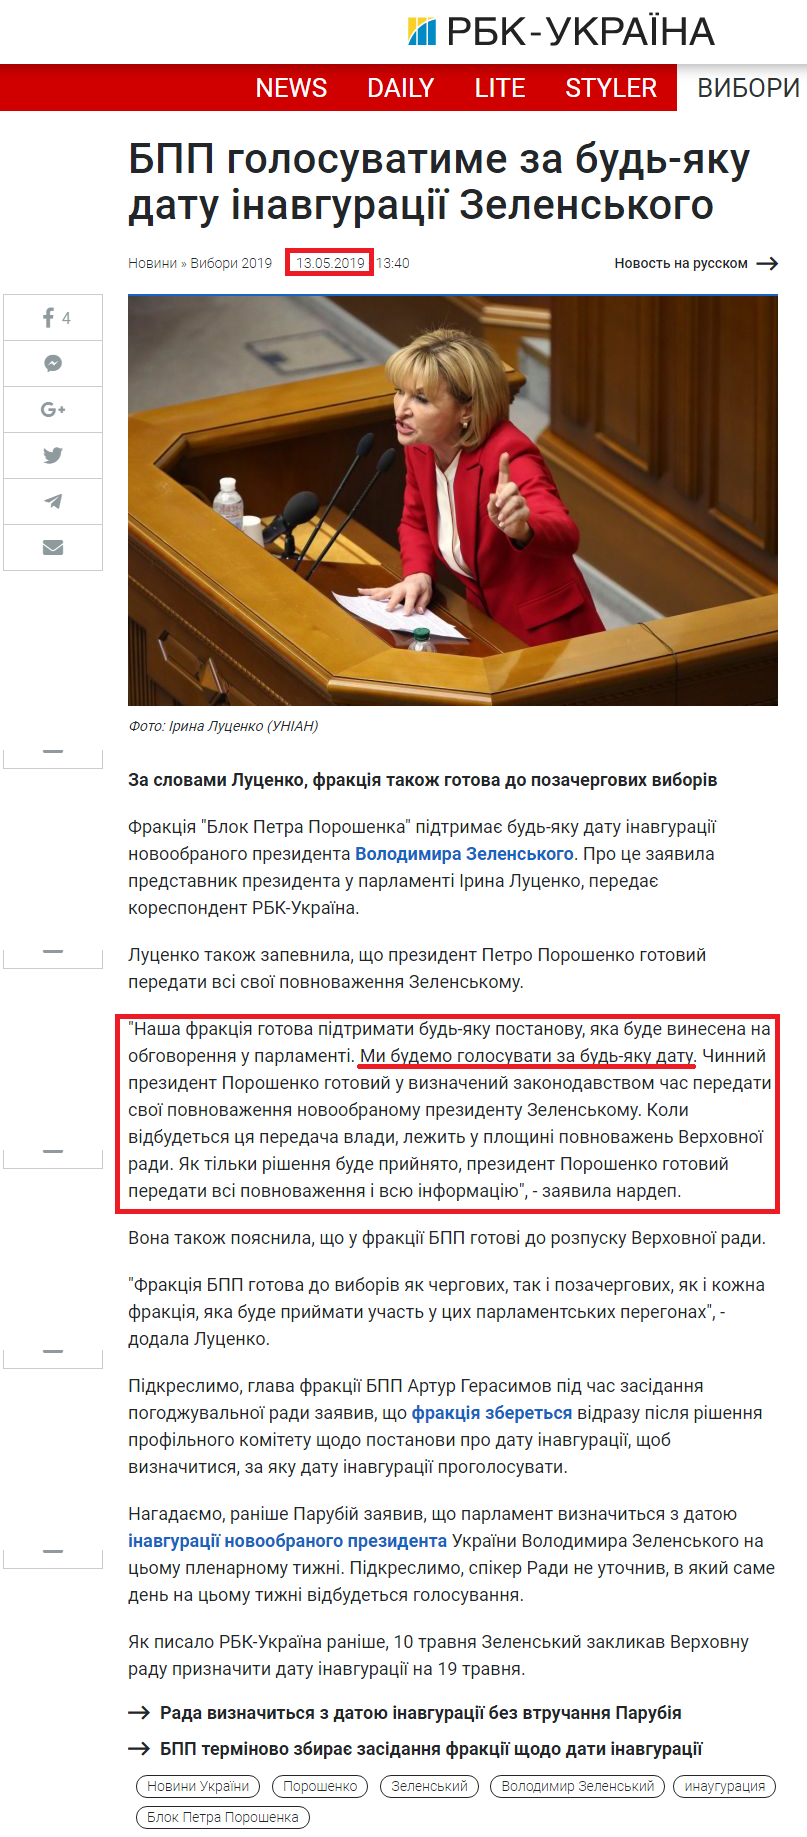 https://www.rbc.ua/ukr/news/uz-uvelichila-chastotu-dvizheniya-sdvoennogo-1557743983.html